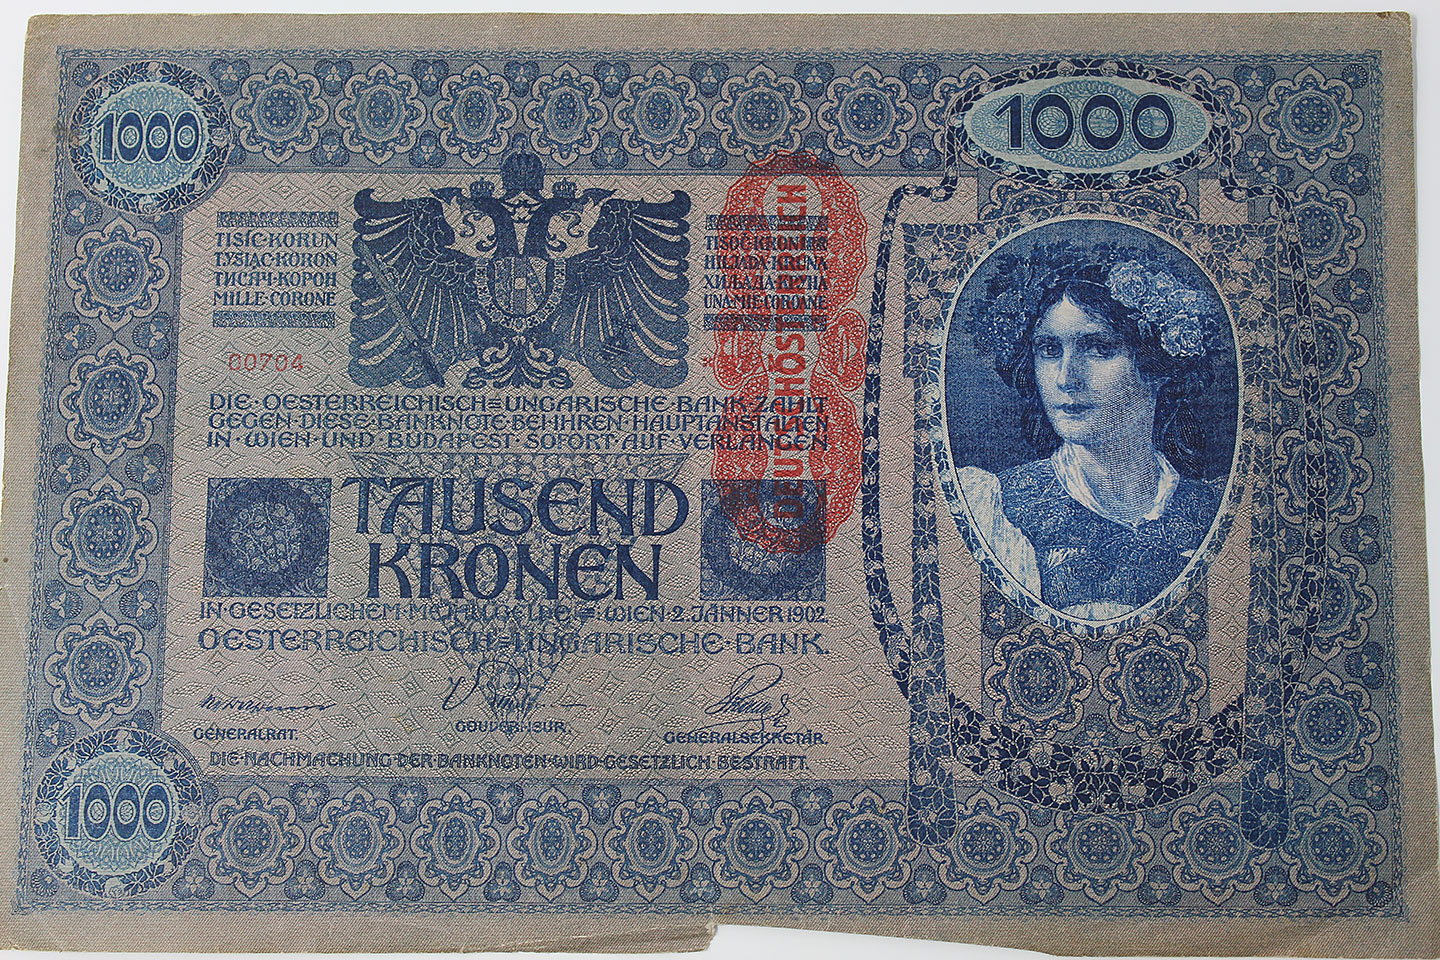 German-Austria 1000 Tausend Kronan 1902 Note . COINPM9